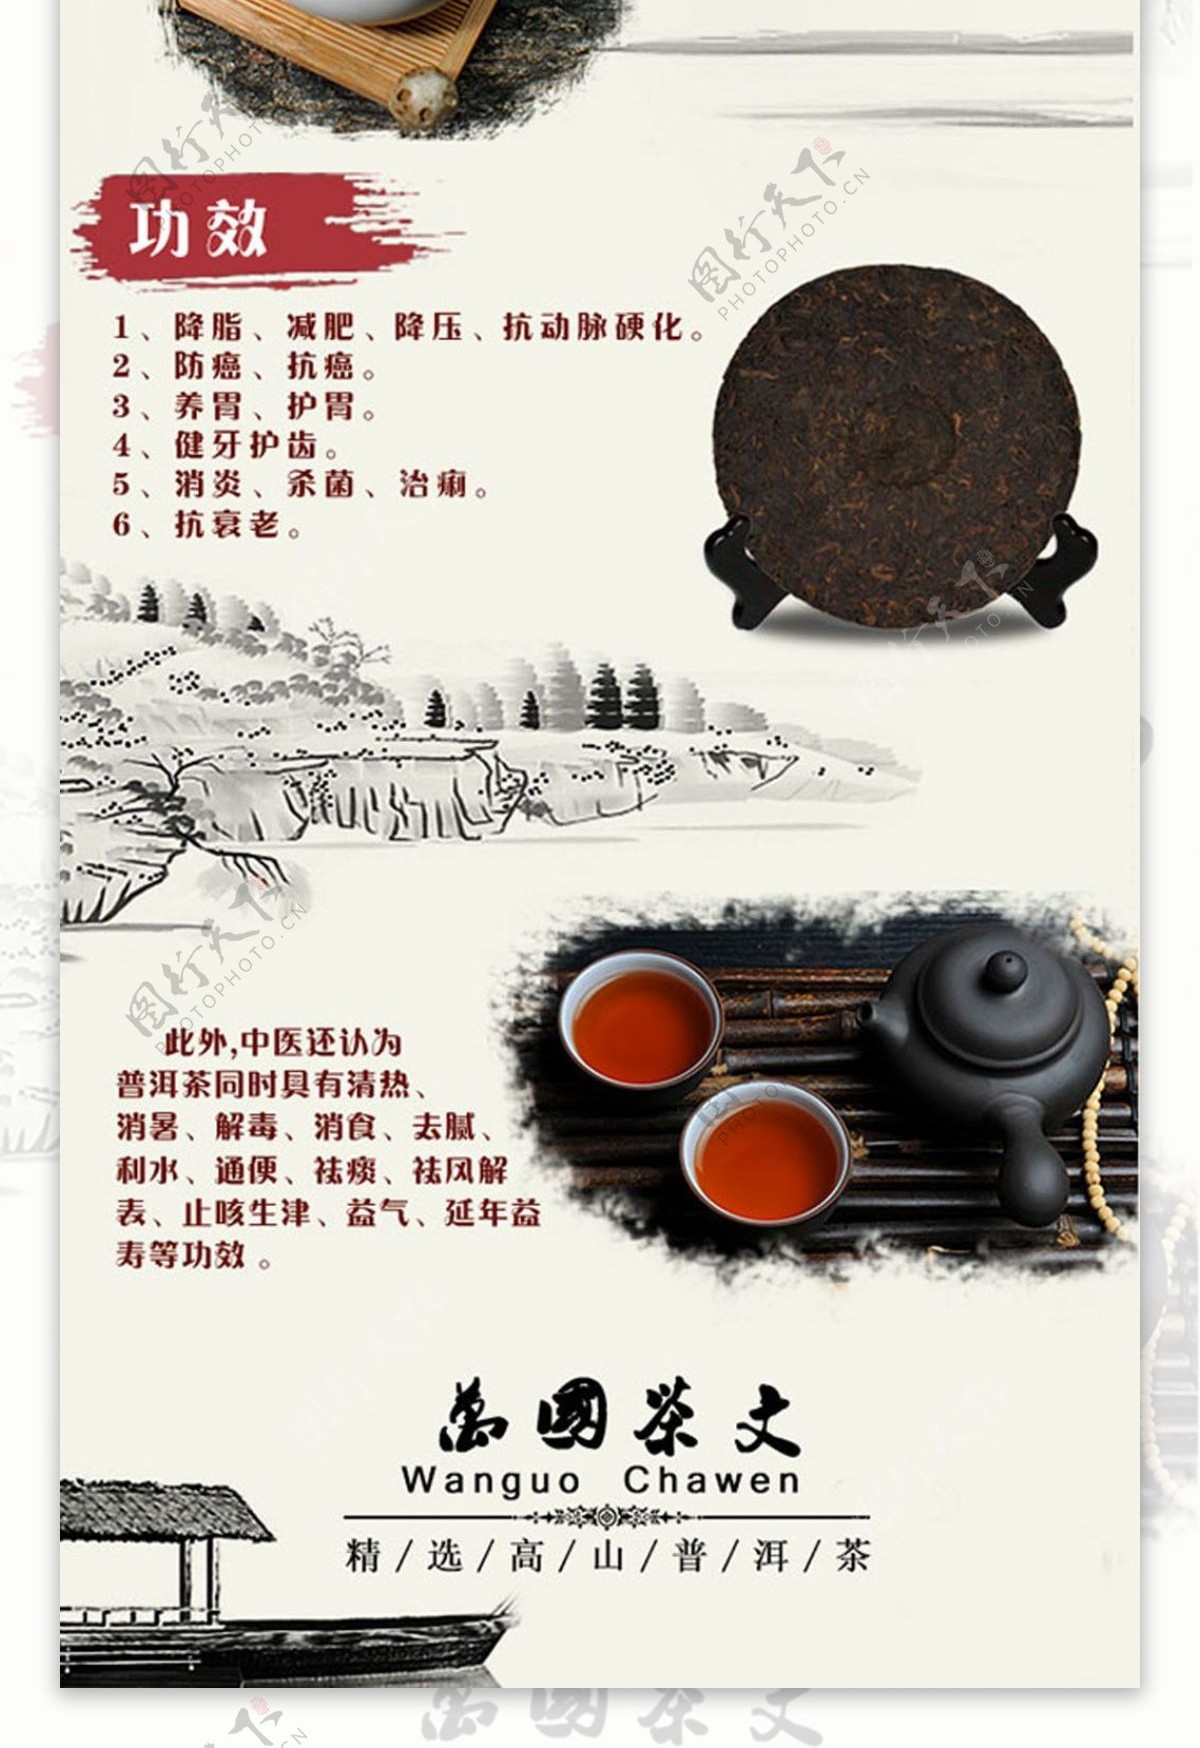 皇家贡茶网页海报